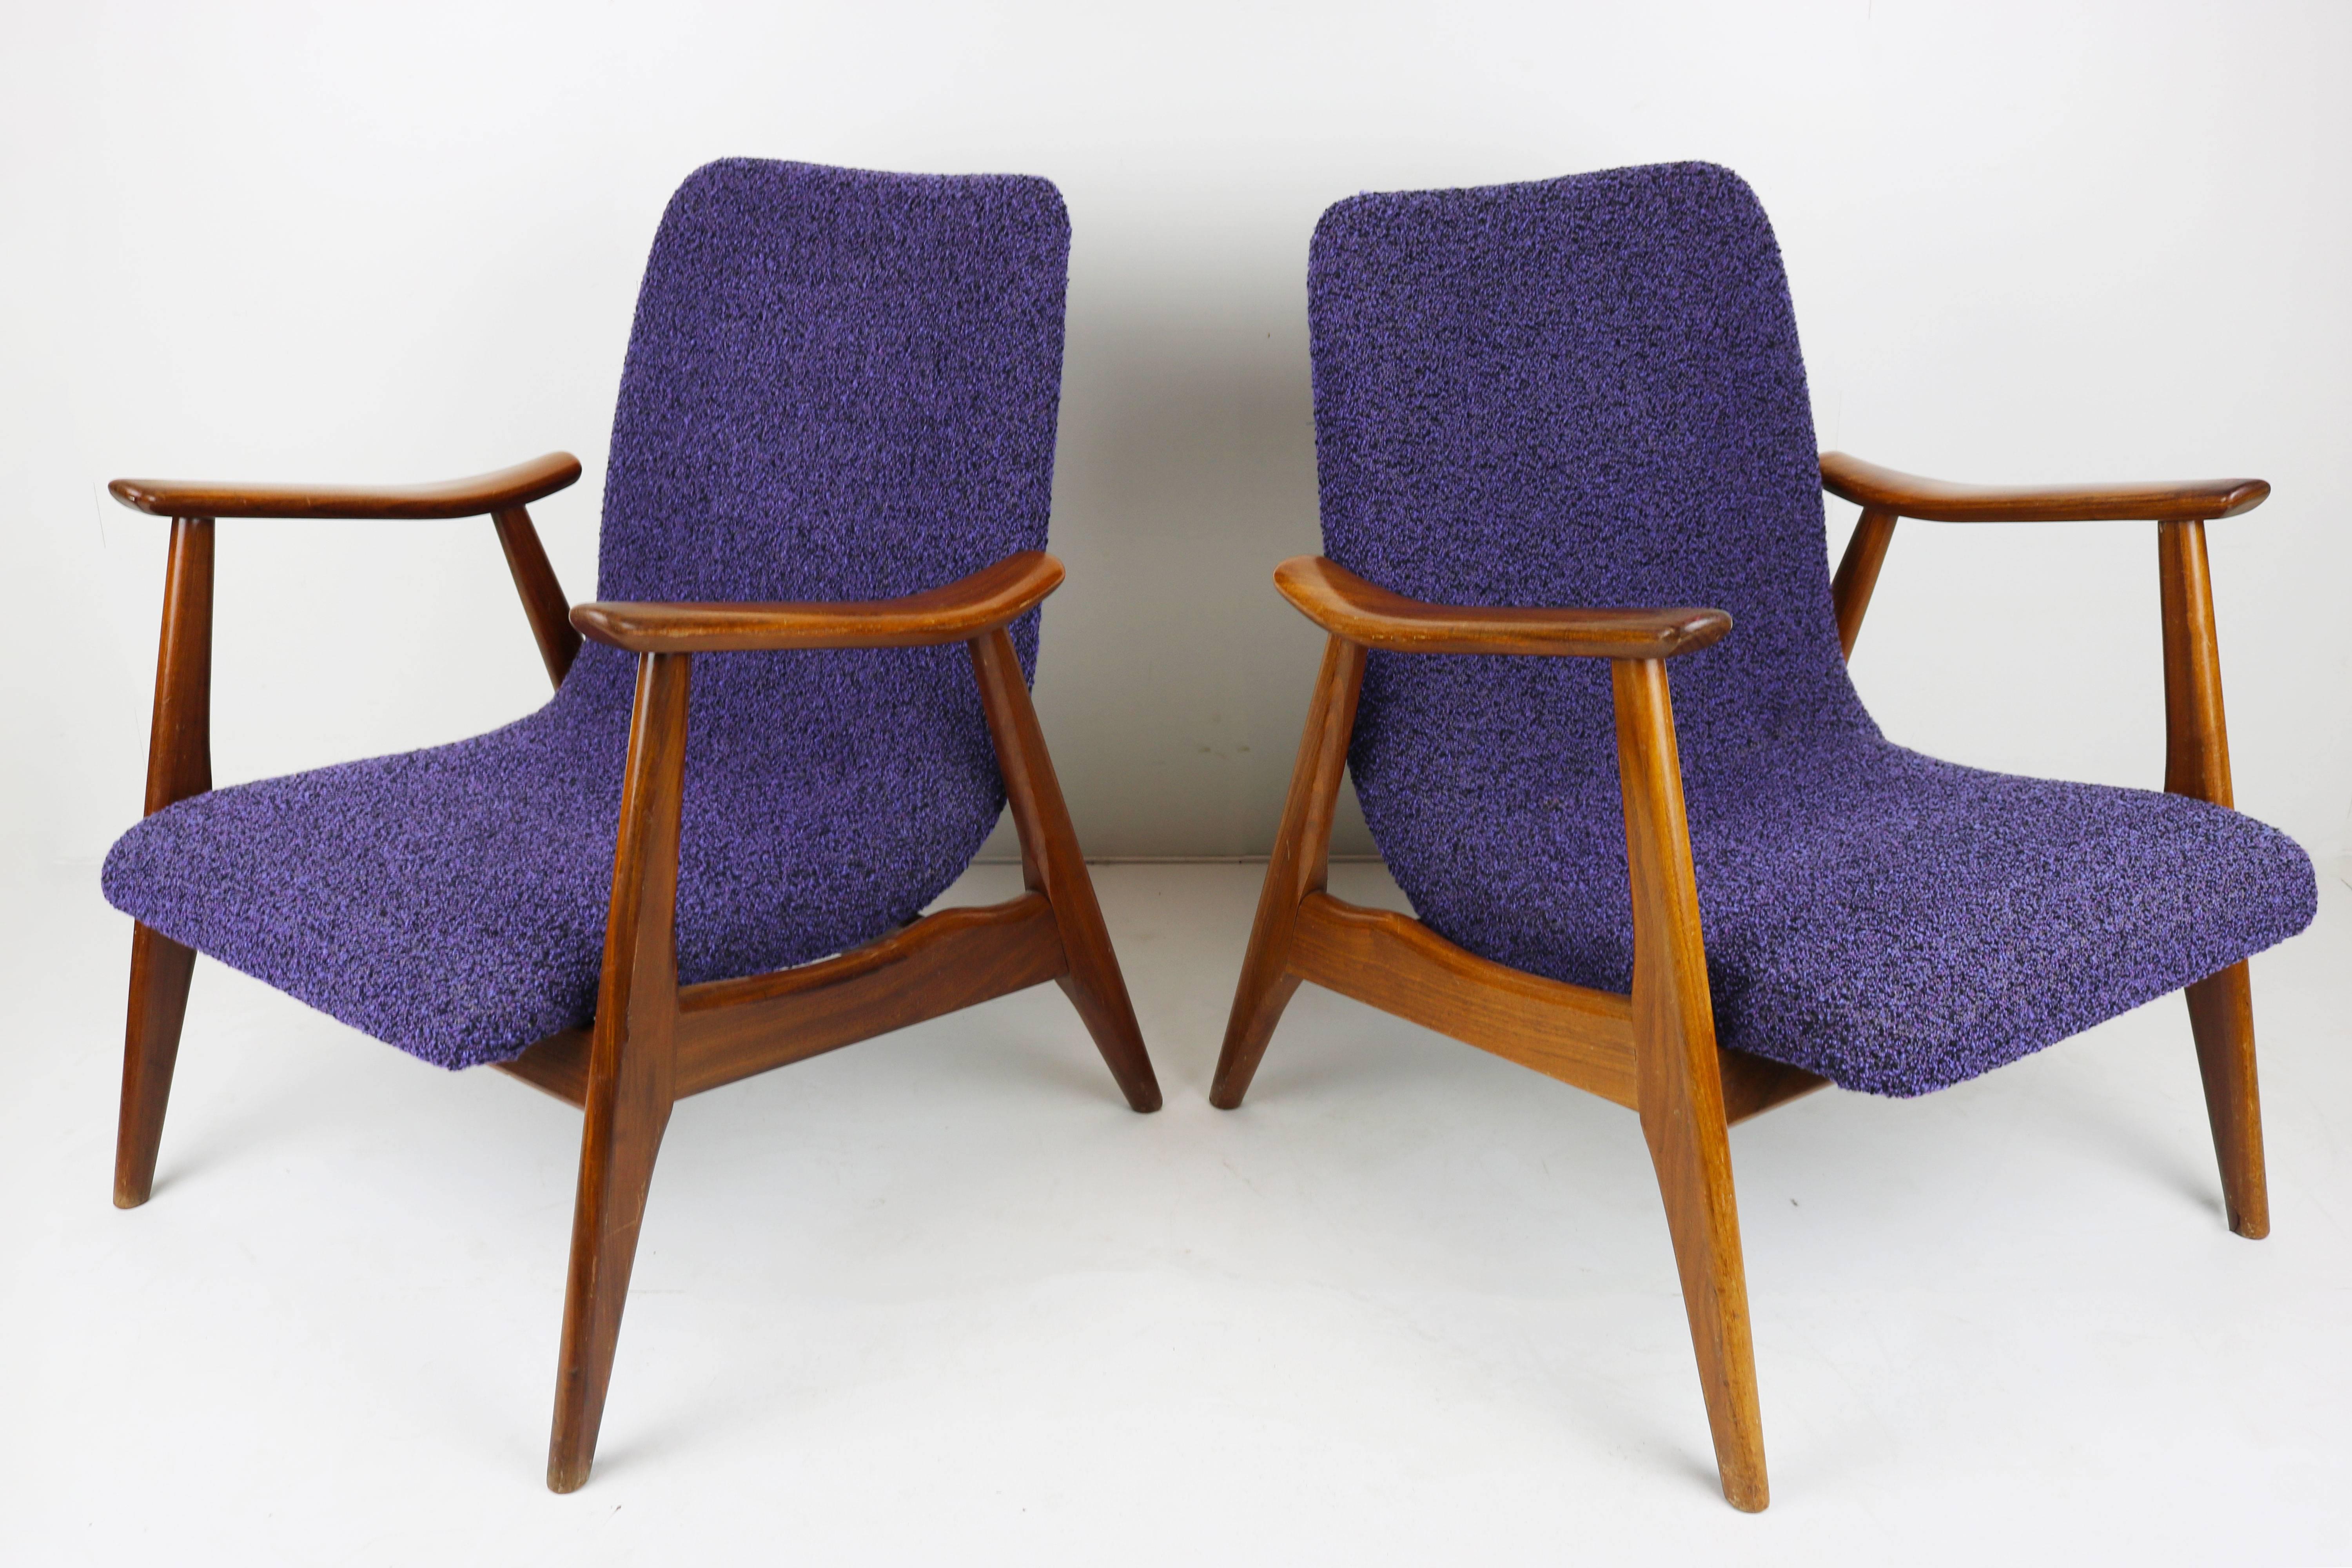 Set of Two Teak Lounge Chairs by Louis Van Teeffelen for Webe 1960 Brown Purple 1